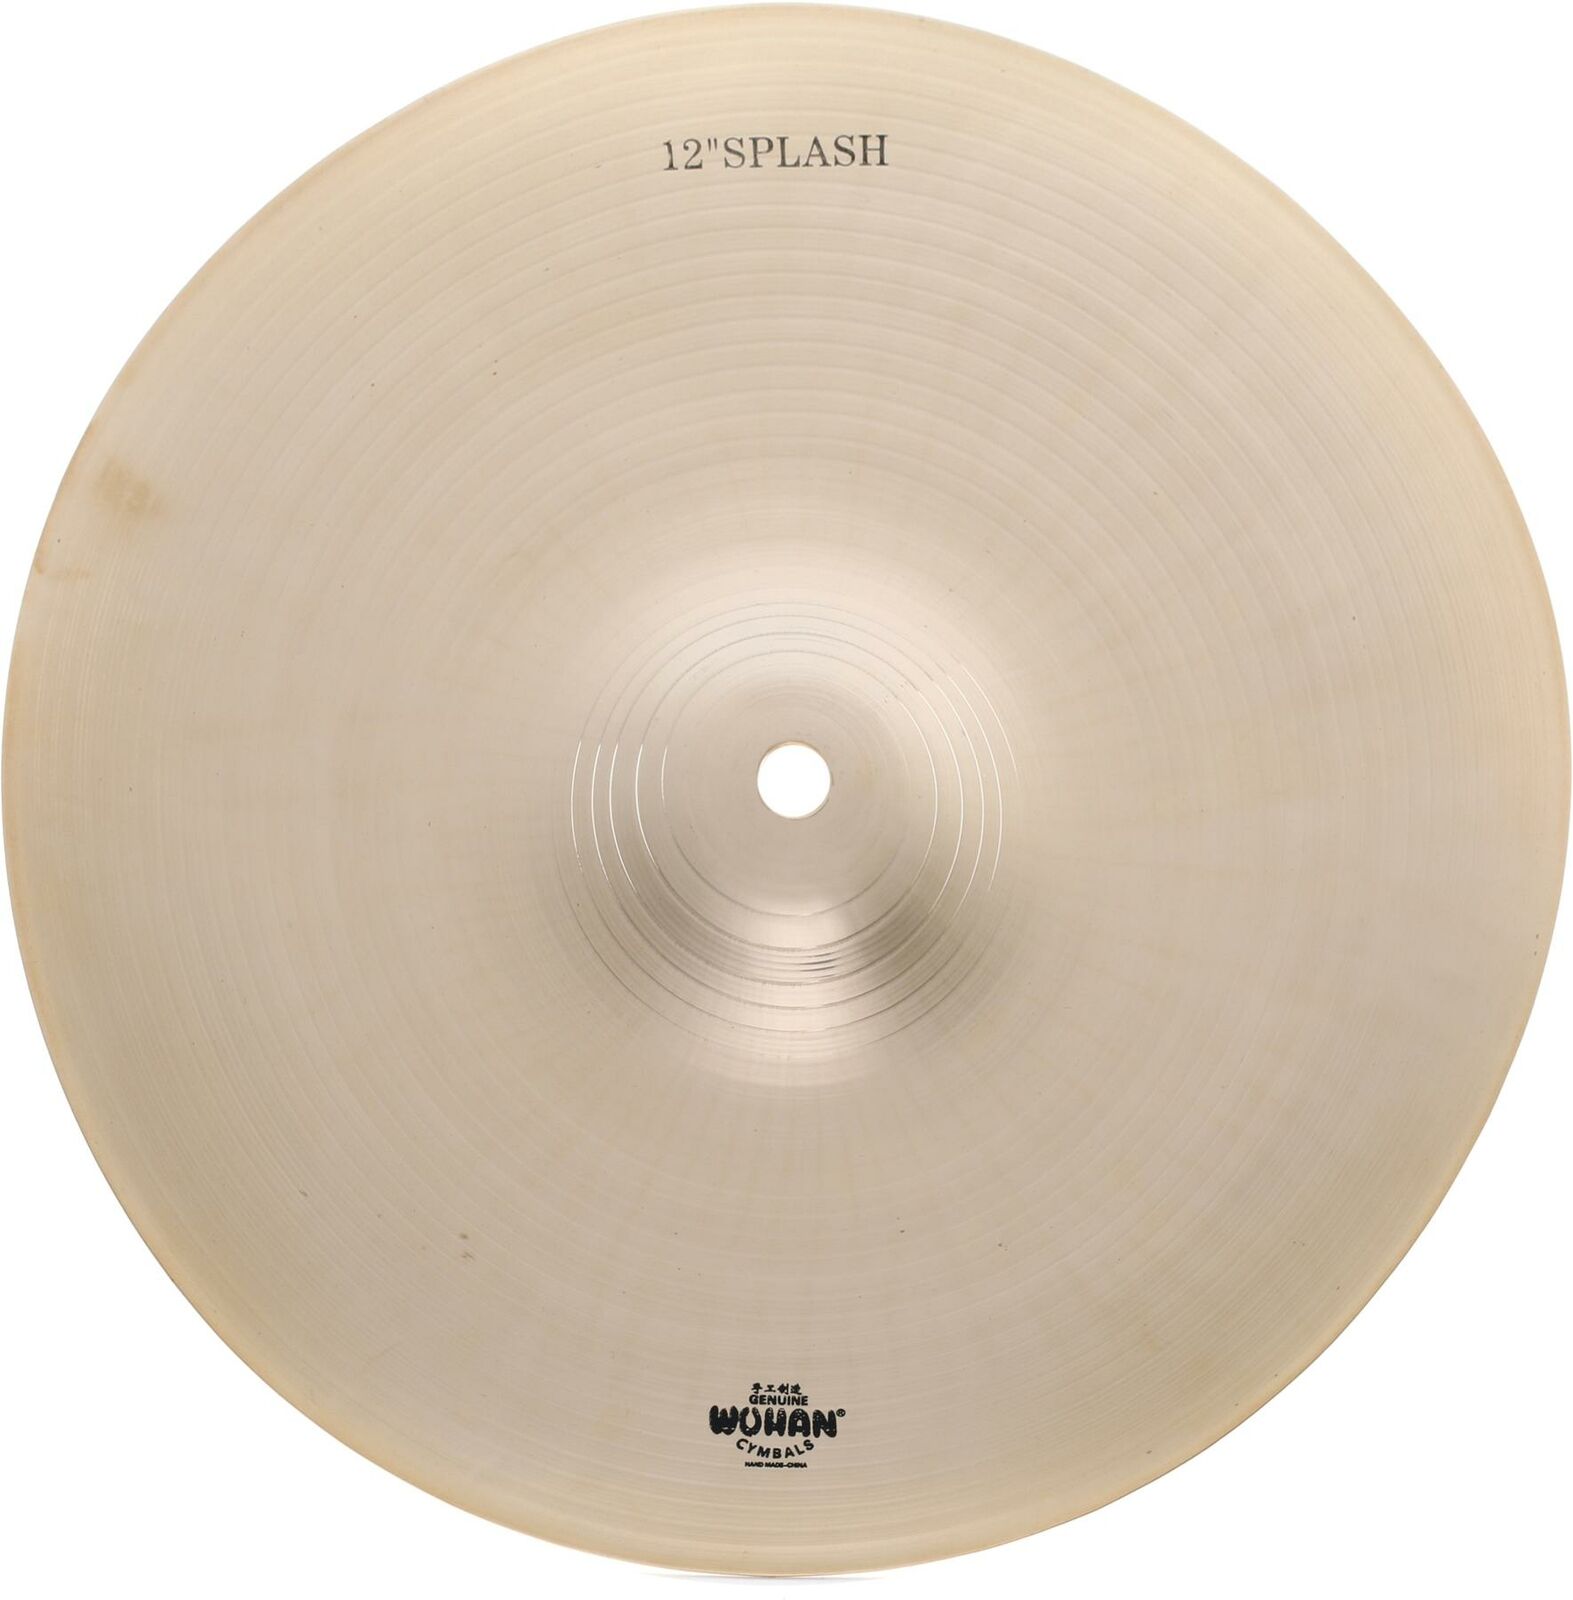 Wuhan Splash Cymbal - 12"